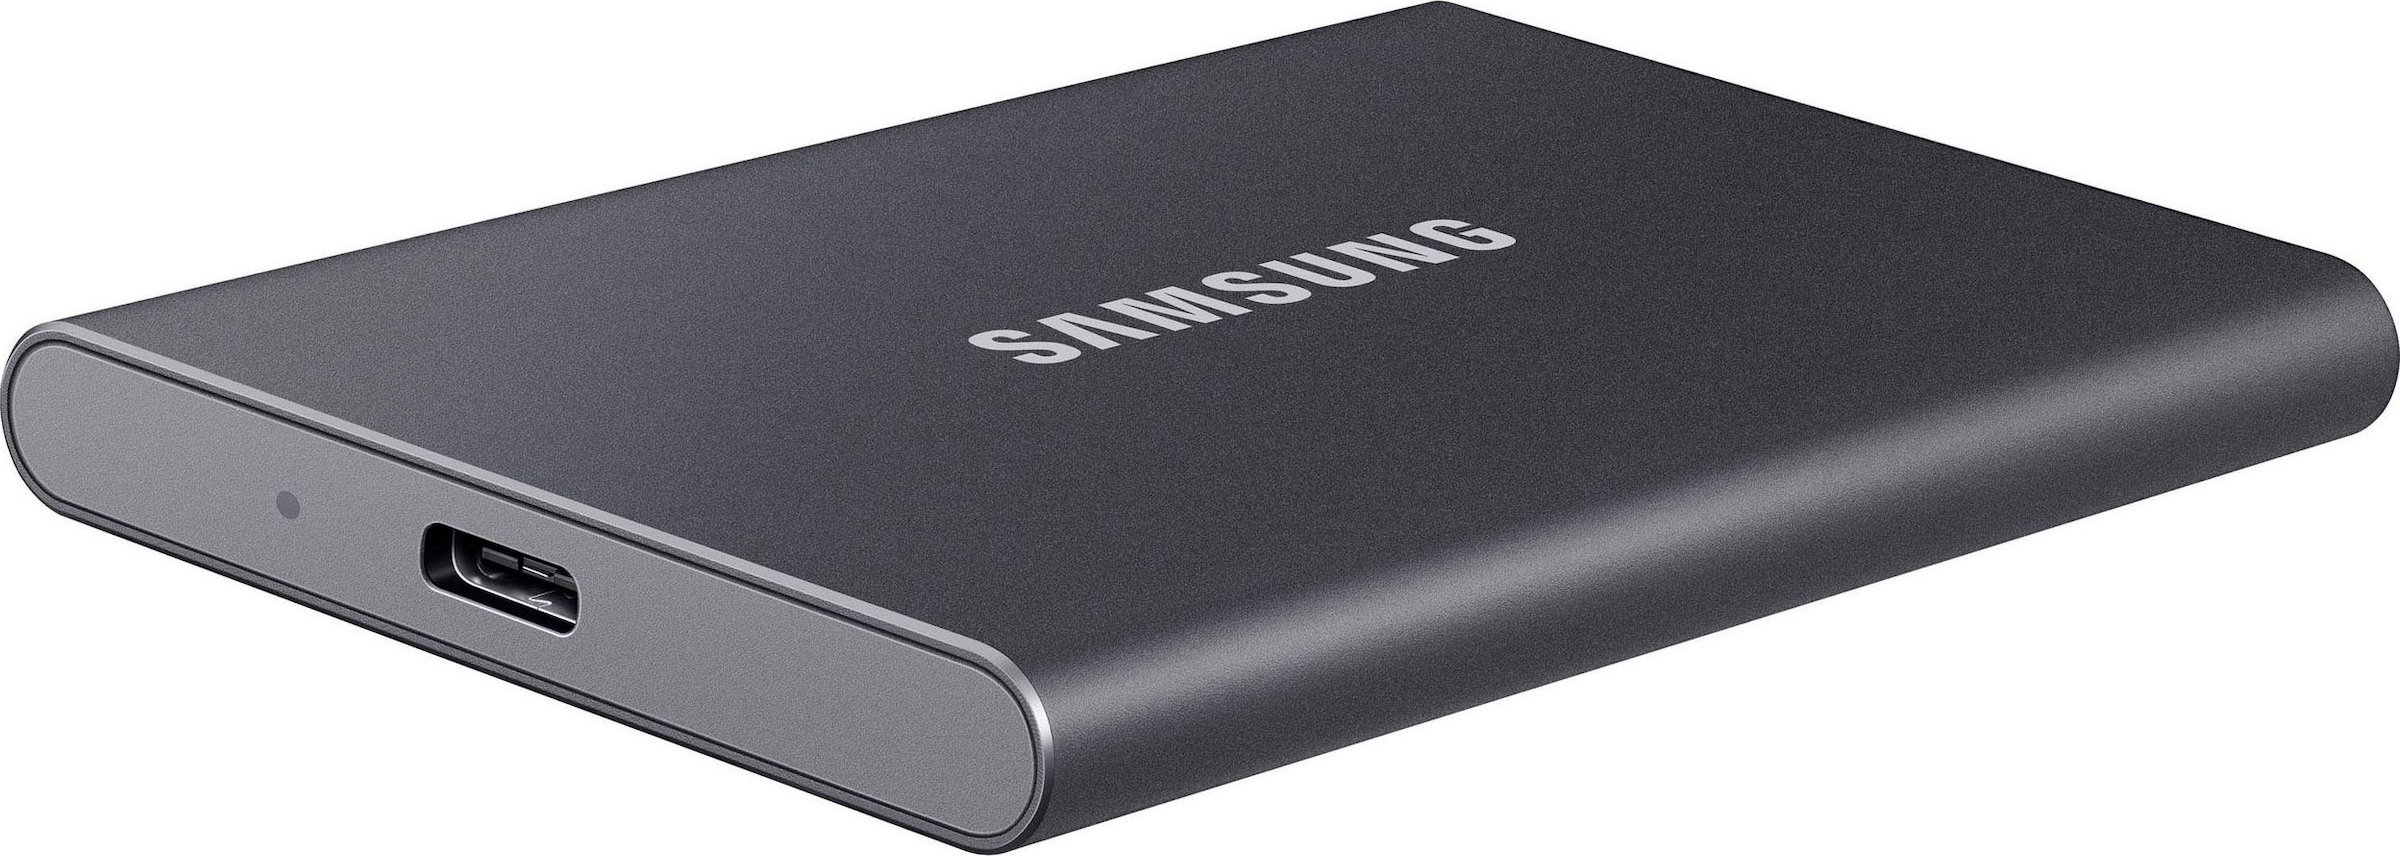 Samsung externe SSD | UNIVERSAL Anschluss USB 3.2 Jahre SSD Garantie 3 XXL T7«, ➥ »Portable